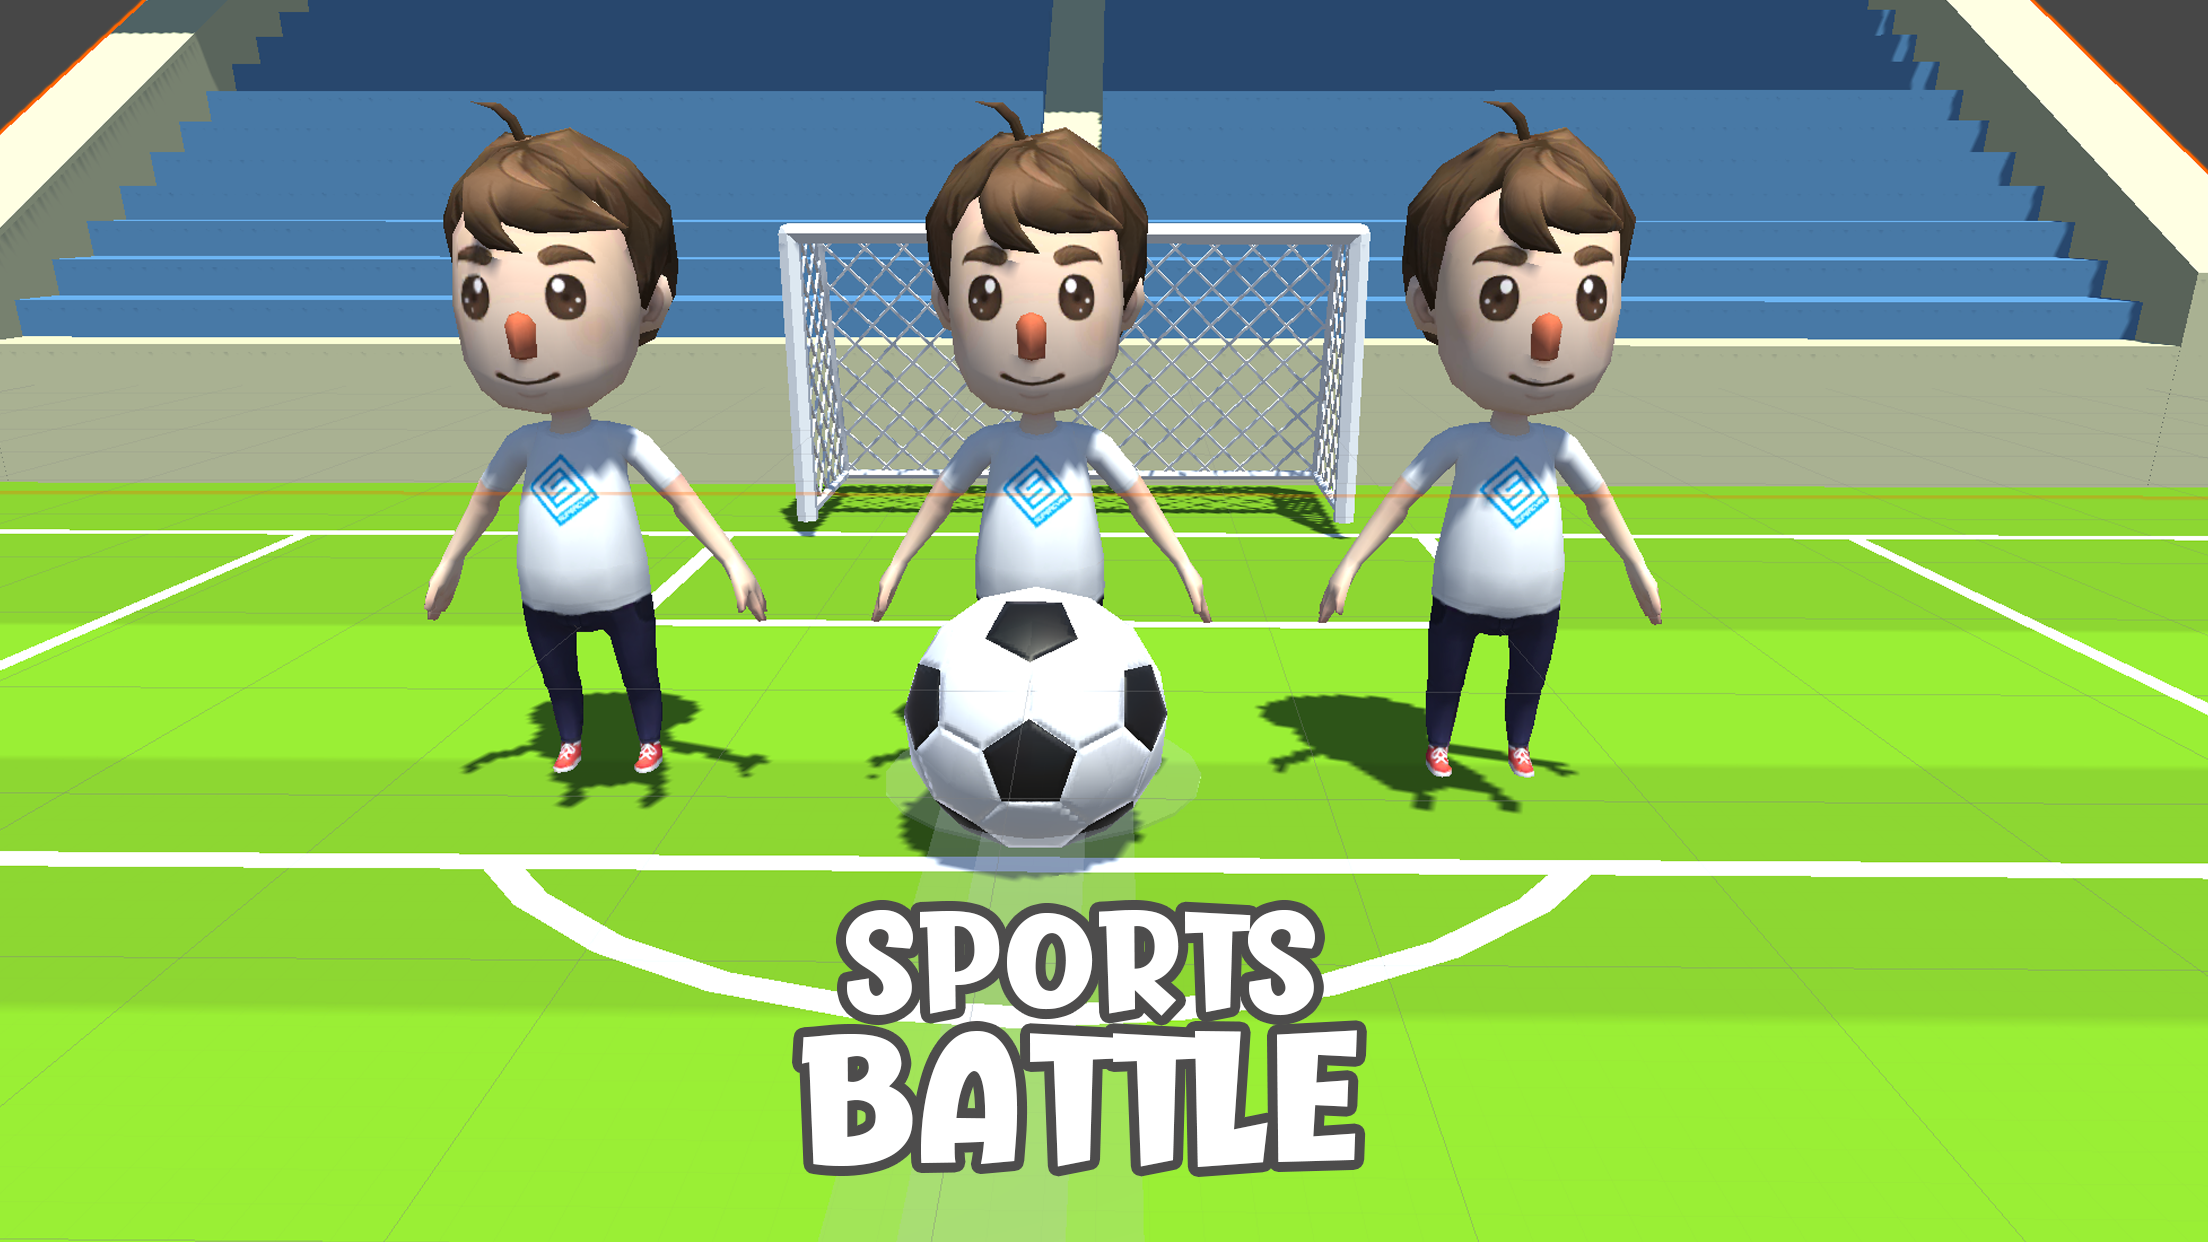 Sports Battle - Soccerのキャプチャ